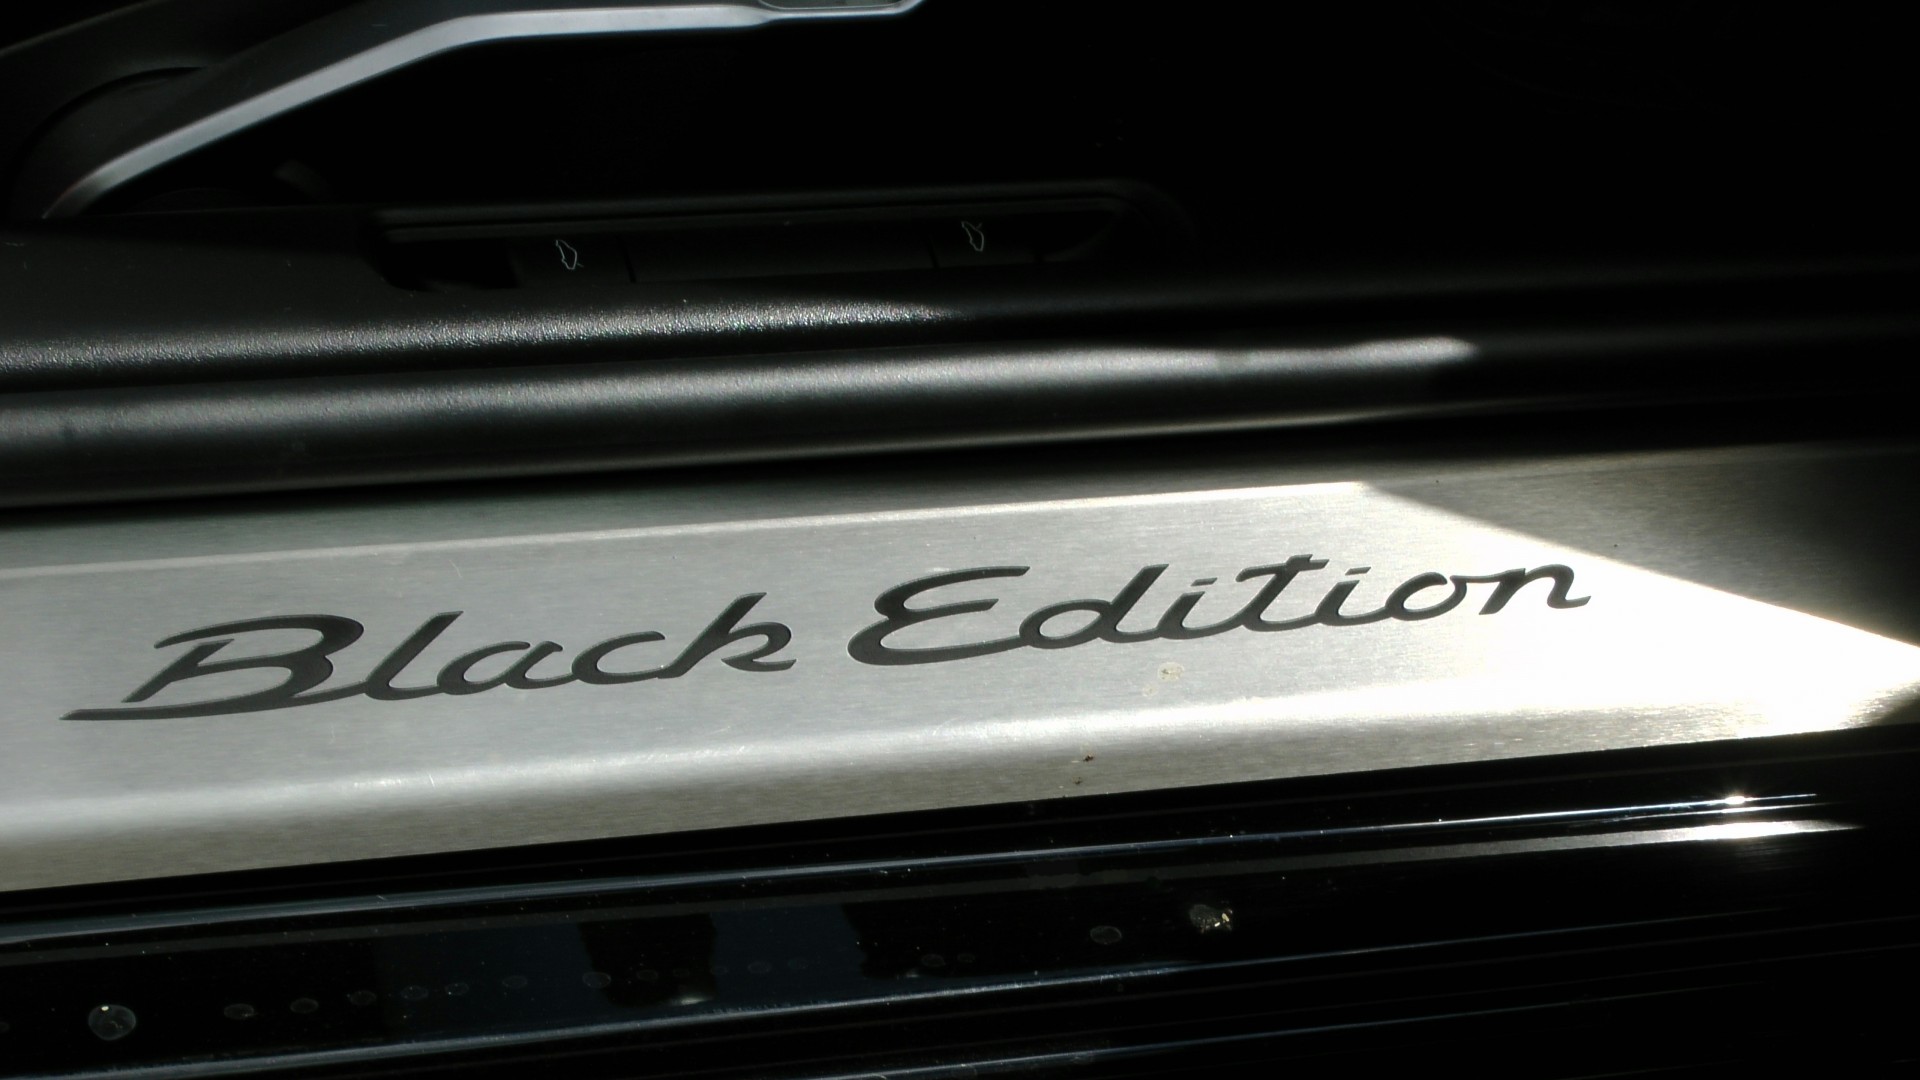 porsche black edition sills porsche black edition free photo